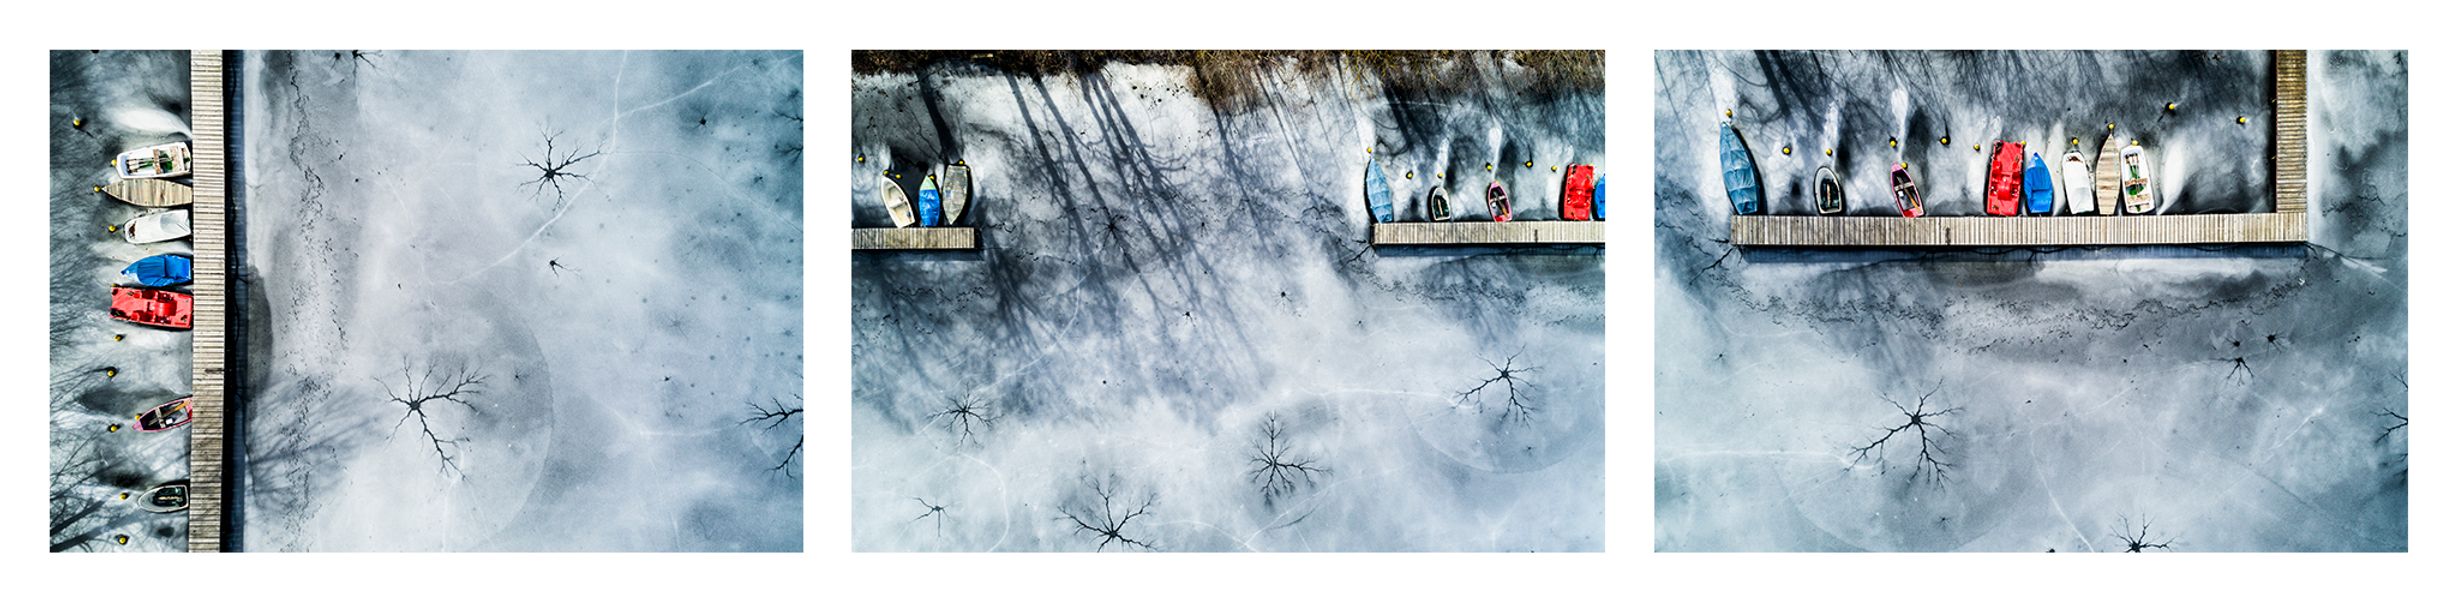 Stefan Kuhn's "Lakeshore Operations / Winter Serie #7" Drohnen Fotografie zeigt ein Seeufer mit 3 Motiven in einem Bild.